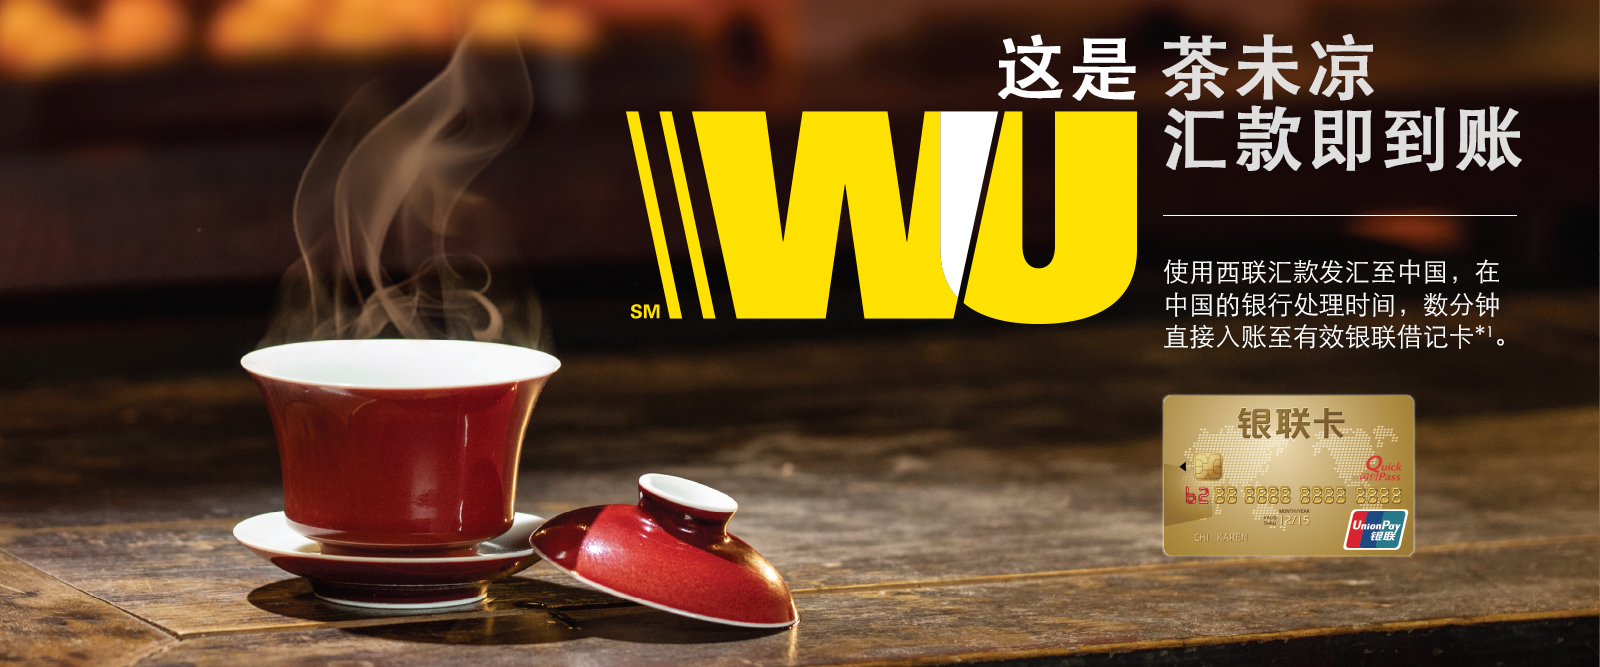 这是 WU 茶未凉汇款即到账 使用西联汇款发汇至中国，在中国的银行处理时间，数分钟直接入账至有效银联借记卡*1。